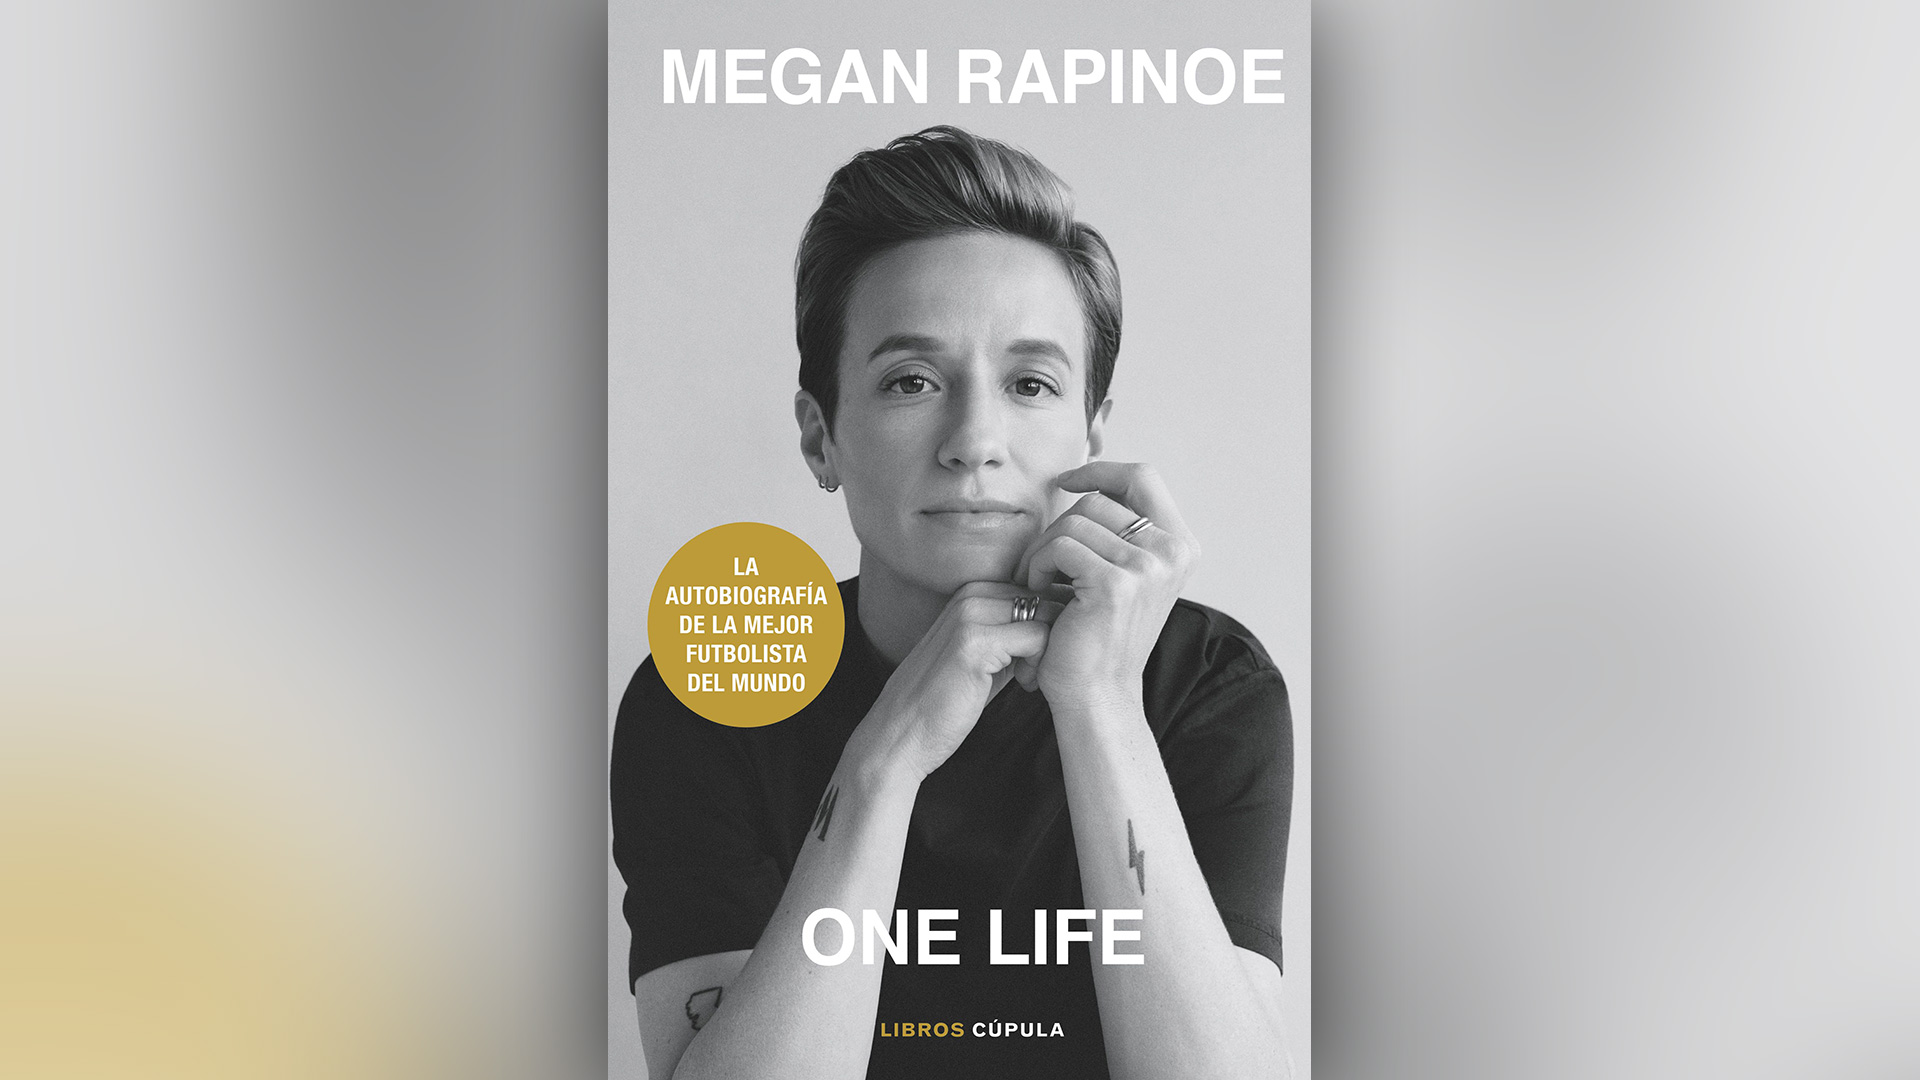 Portada del libro "One Life", de Megan Rapinoe